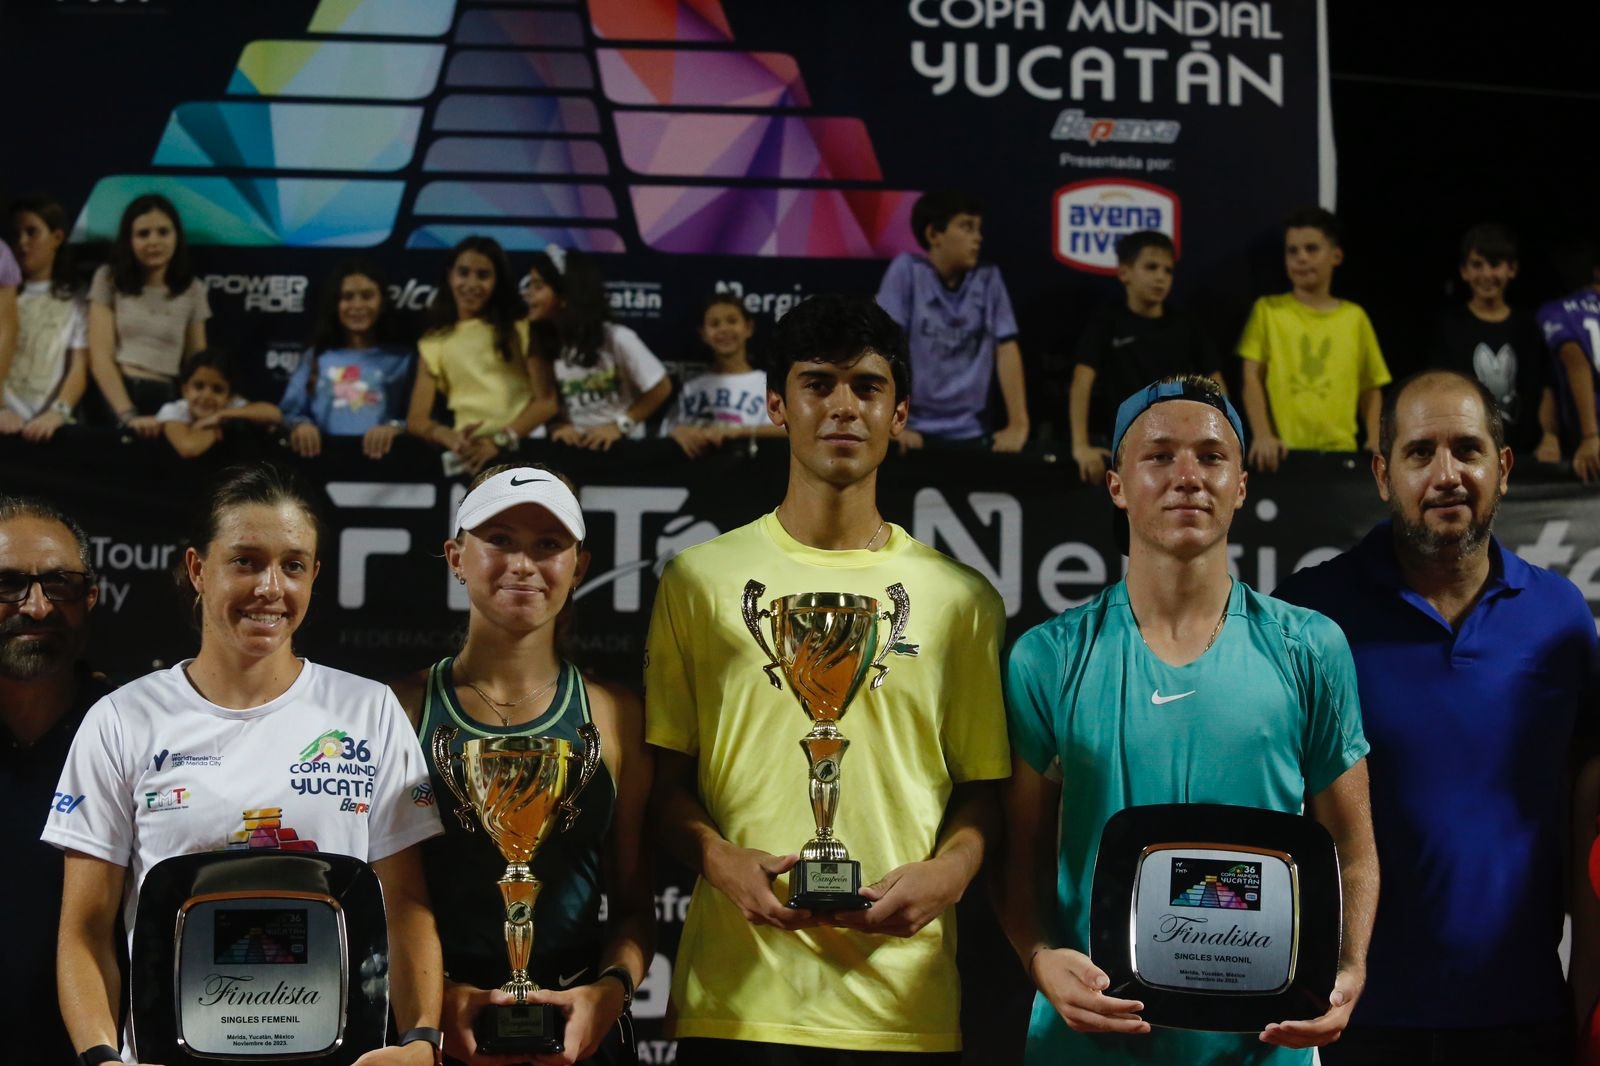 Rodrigo Pacheco consigue el bicampeonato de la Copa Mundial Yucatán de Tenis Juvenil J500